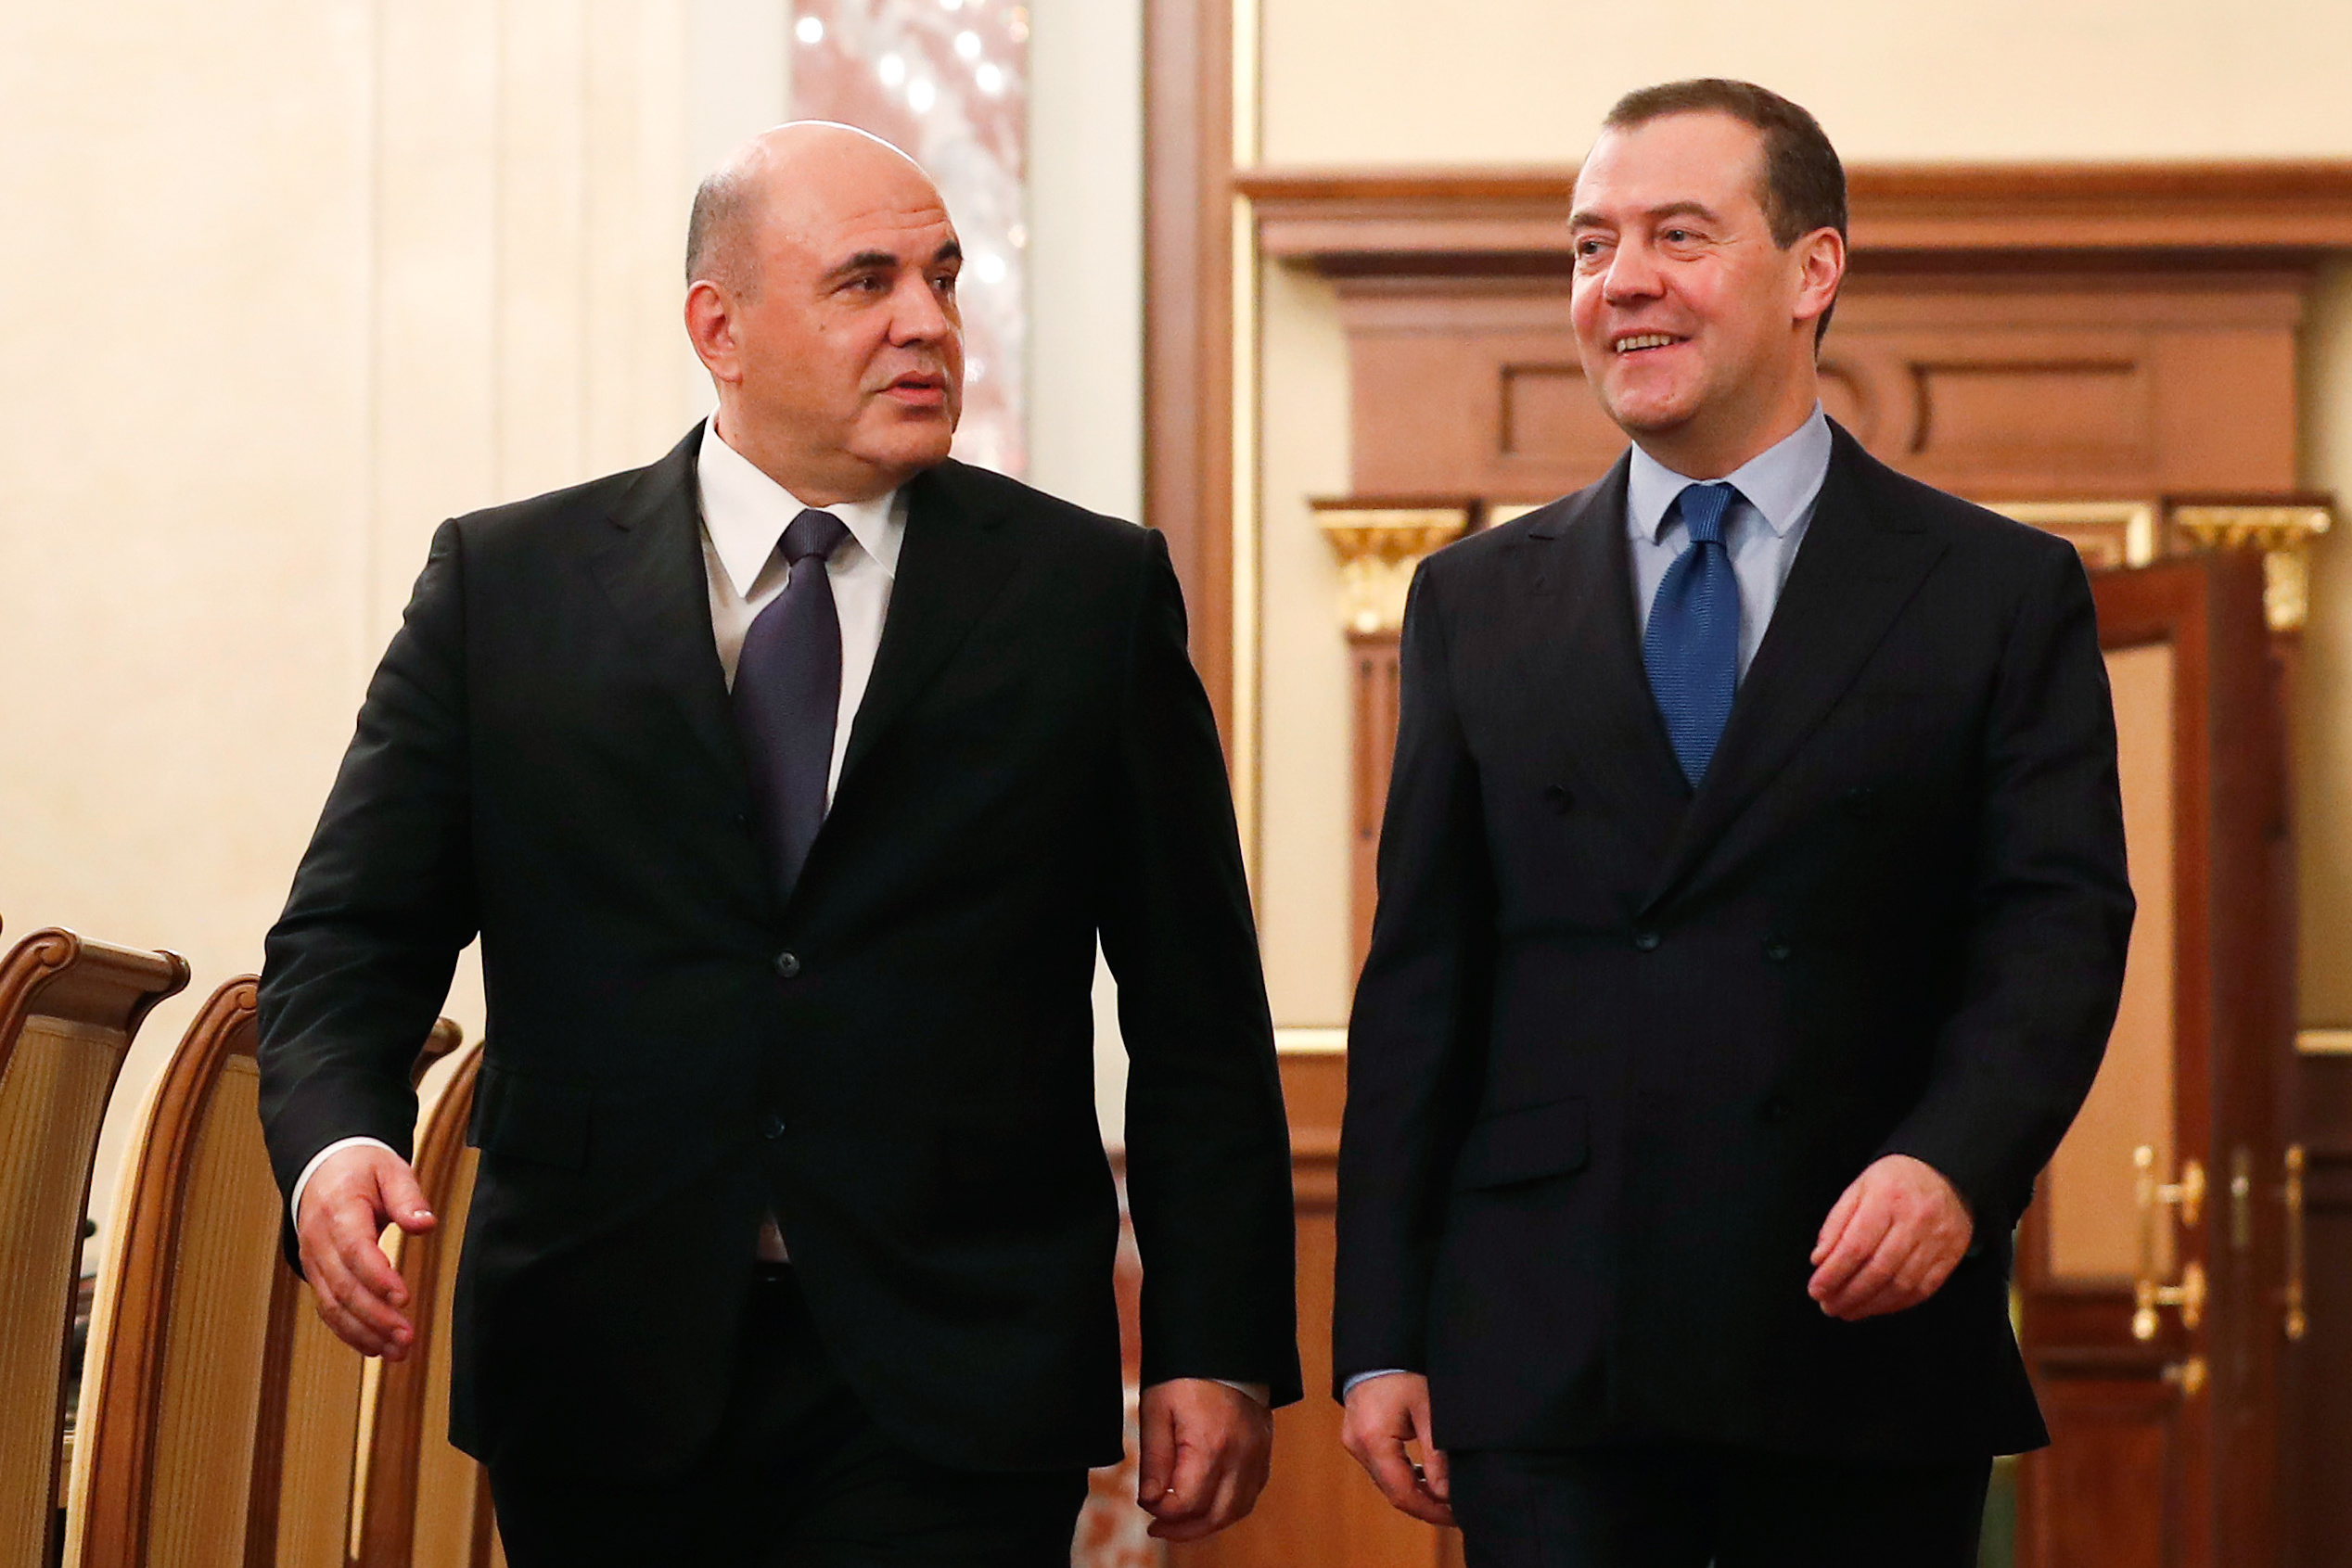 Правительство возглавляет премьер министр. Правительство Медведева и Мишустин. Михаилмишстин дмитриимедведев.